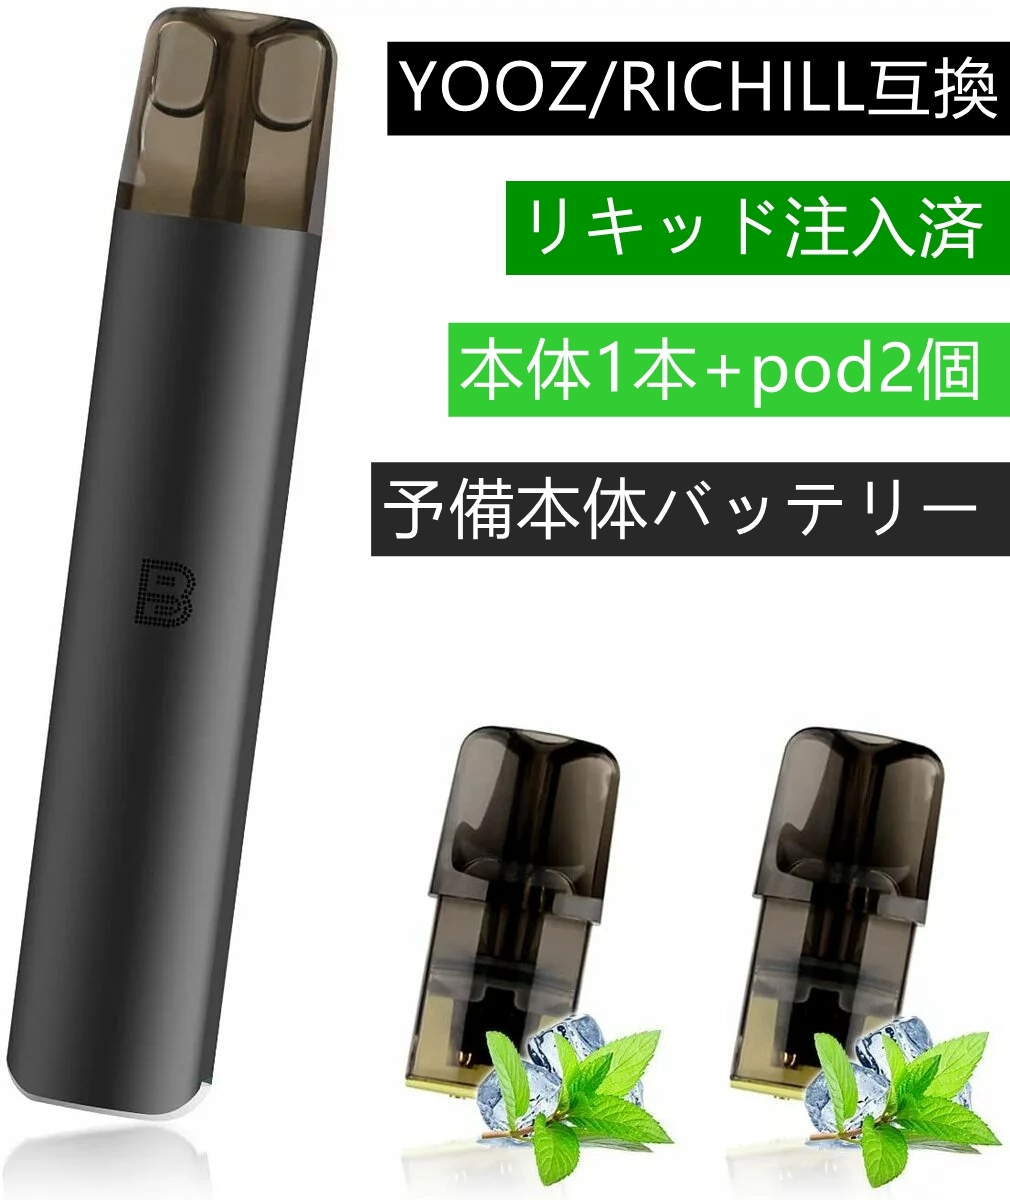 【楽天市場】ECOCCO ヨーズ 電子タバコ ZERO 2 Battery リッチル 